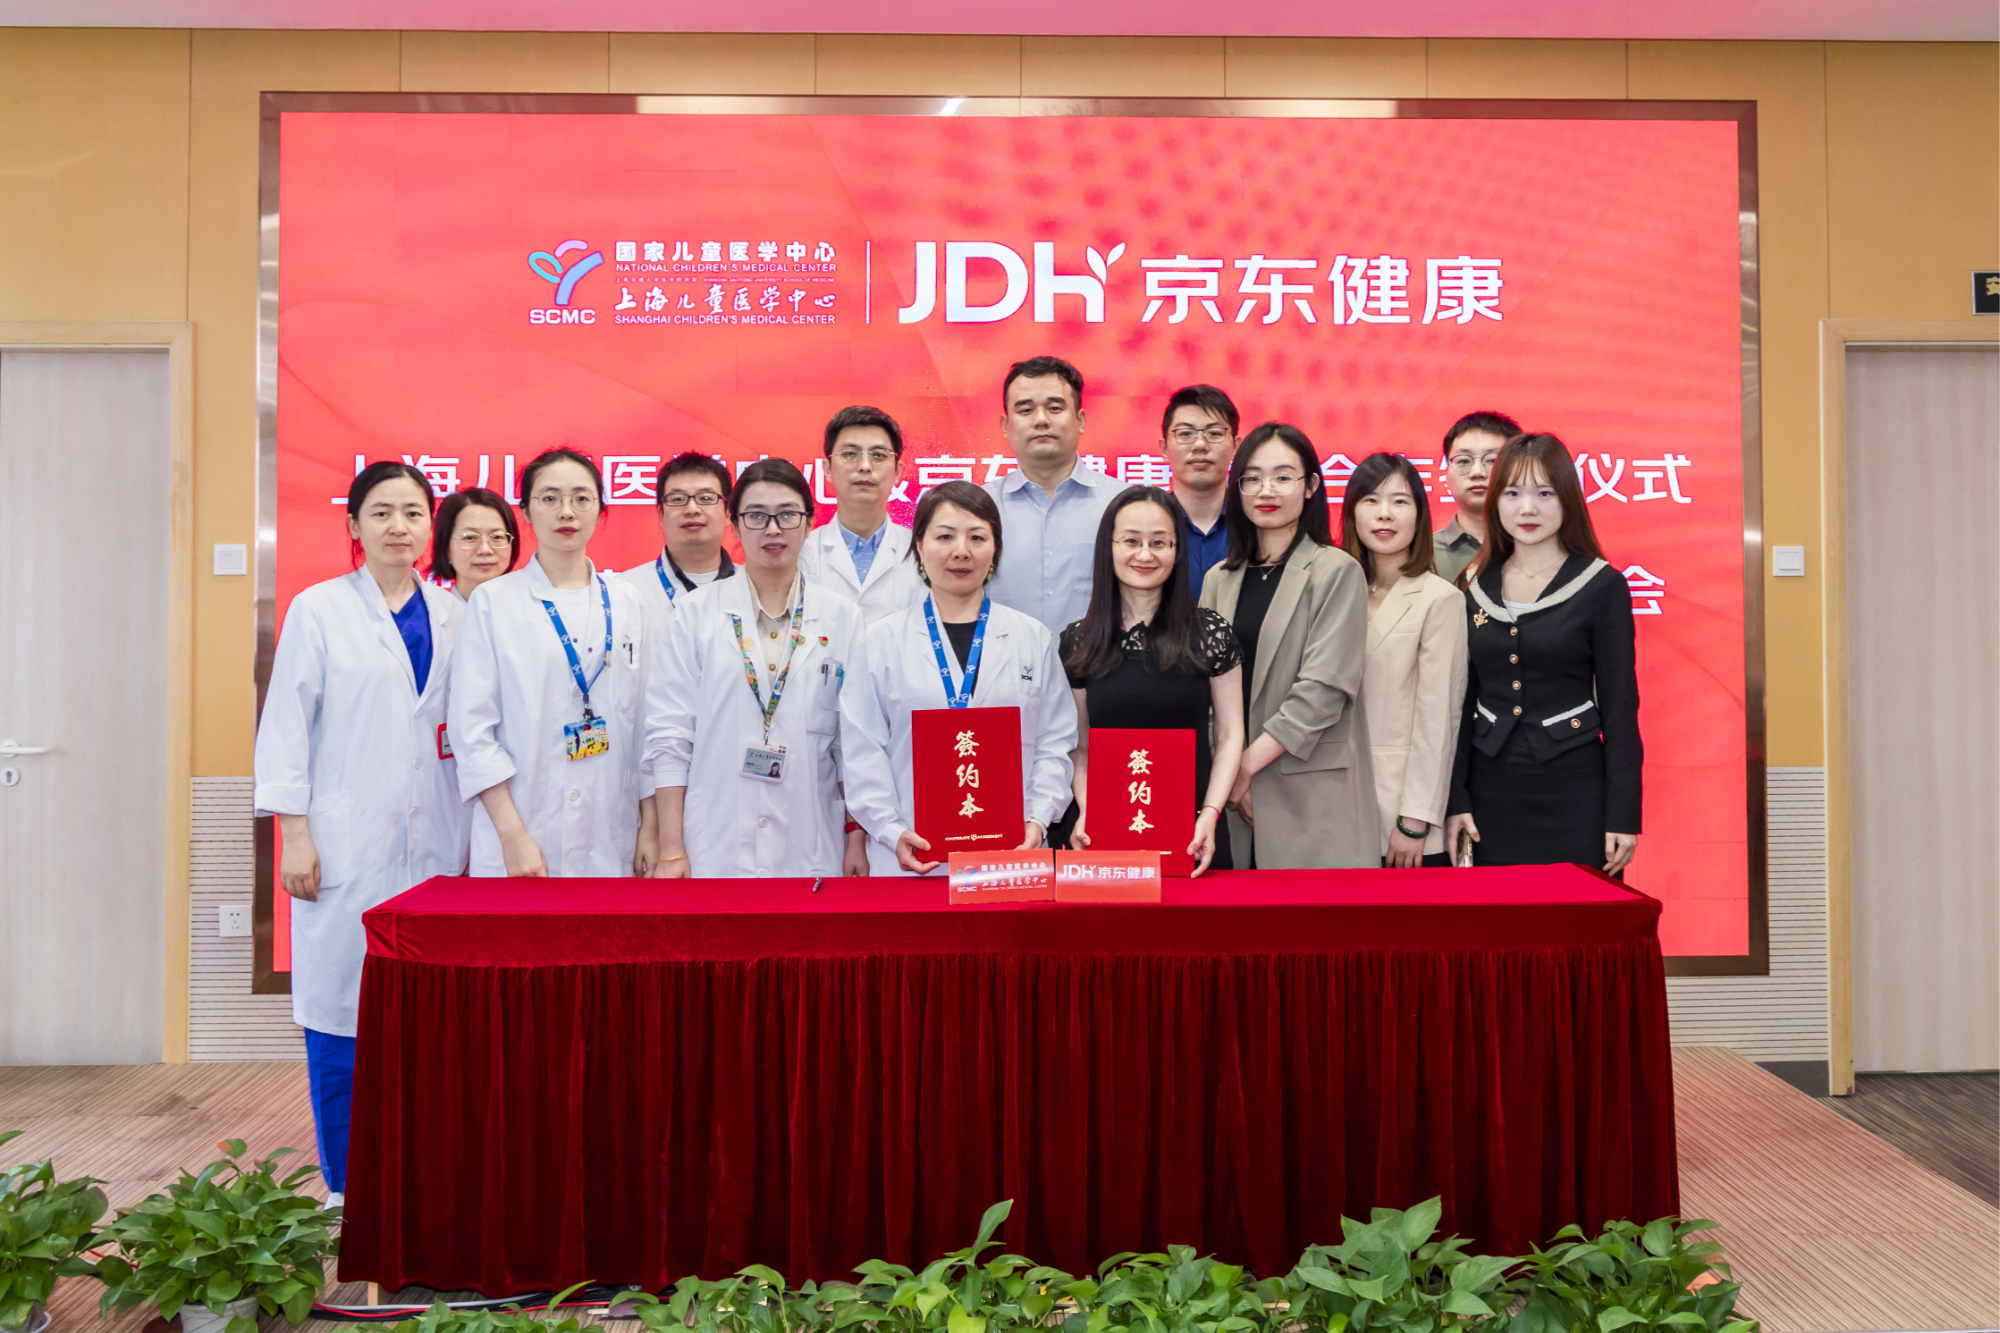 京东健康与上海儿童医学中心联合发起公益项目  共谱儿童健康新篇章